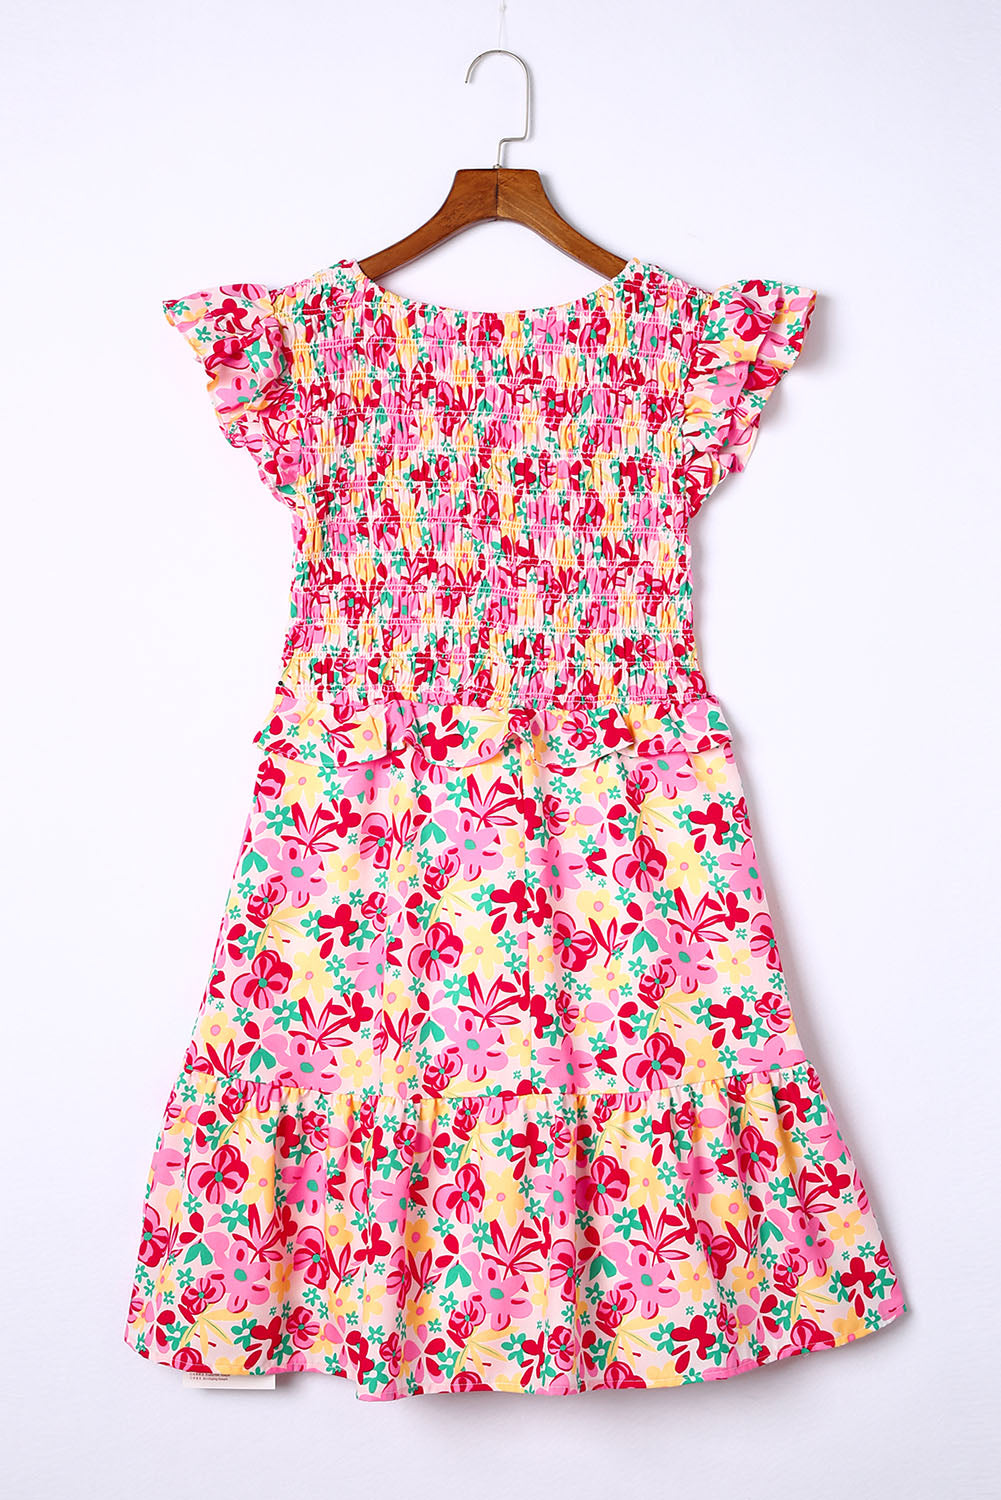 Večbarvna obleka s cvetličnim prirezkom in naborki